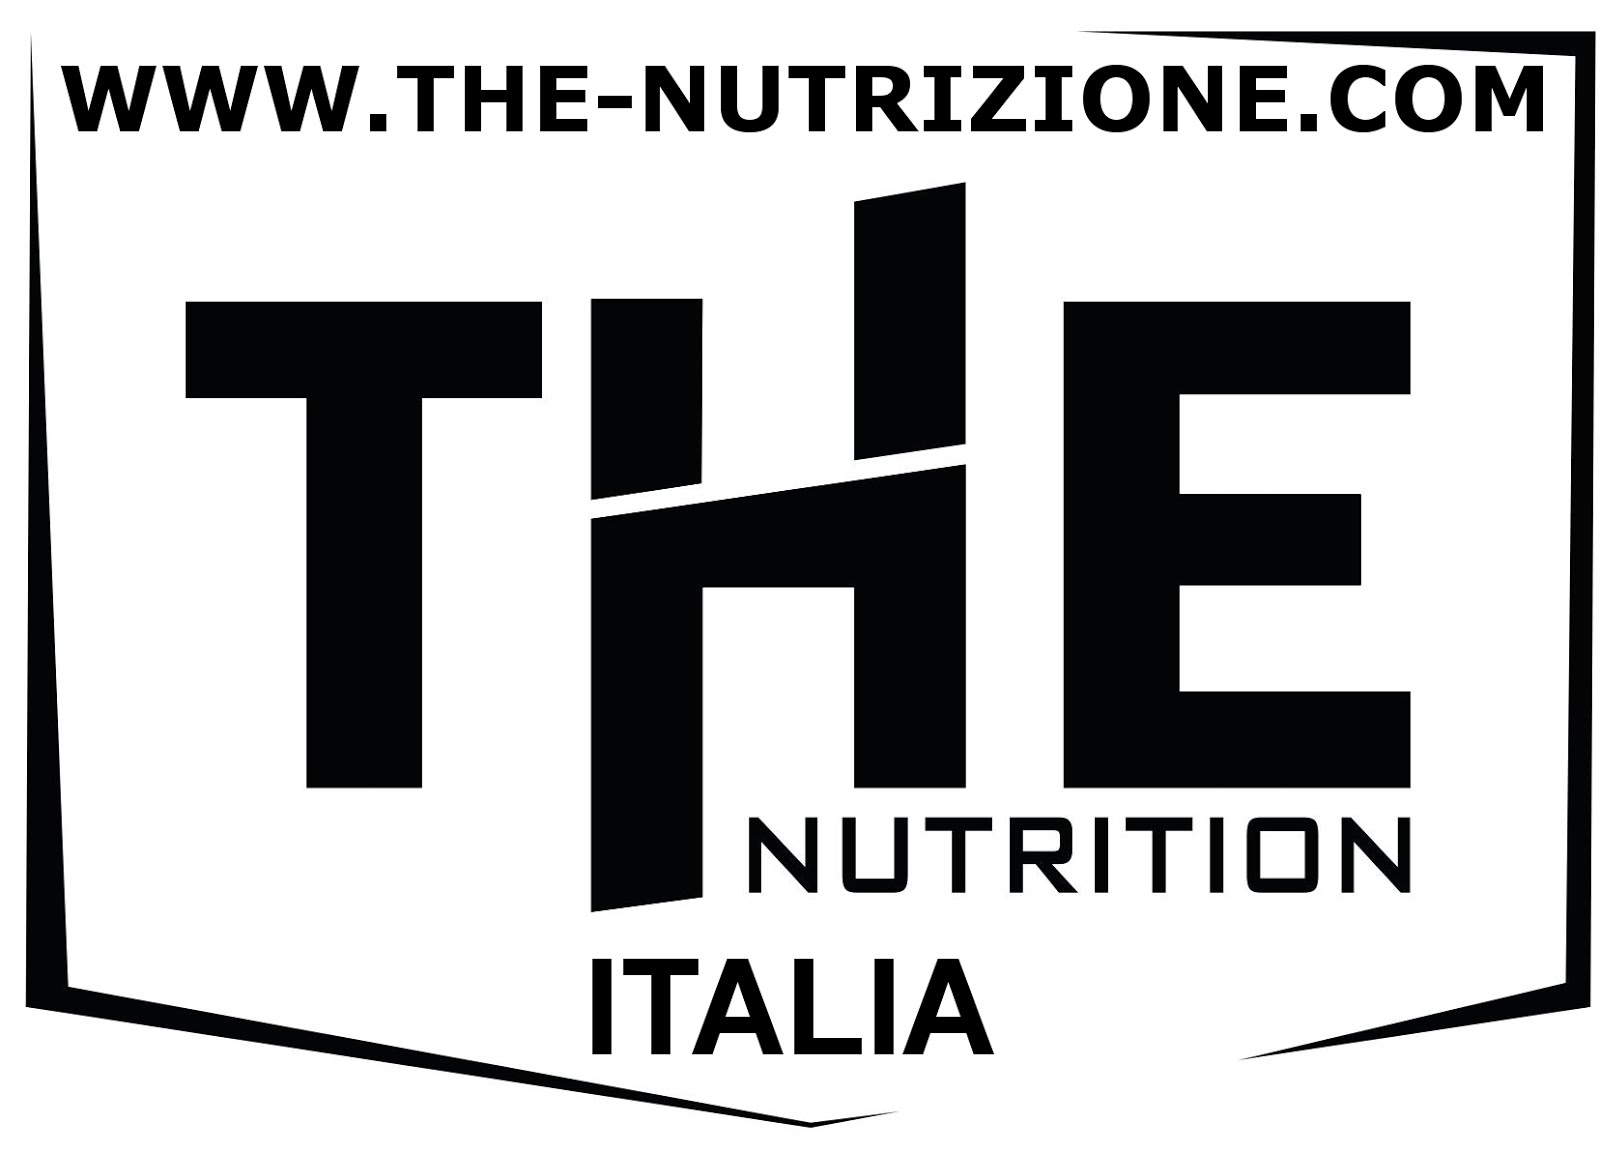 integratori sportivi THE-NUTRITION ITALIA